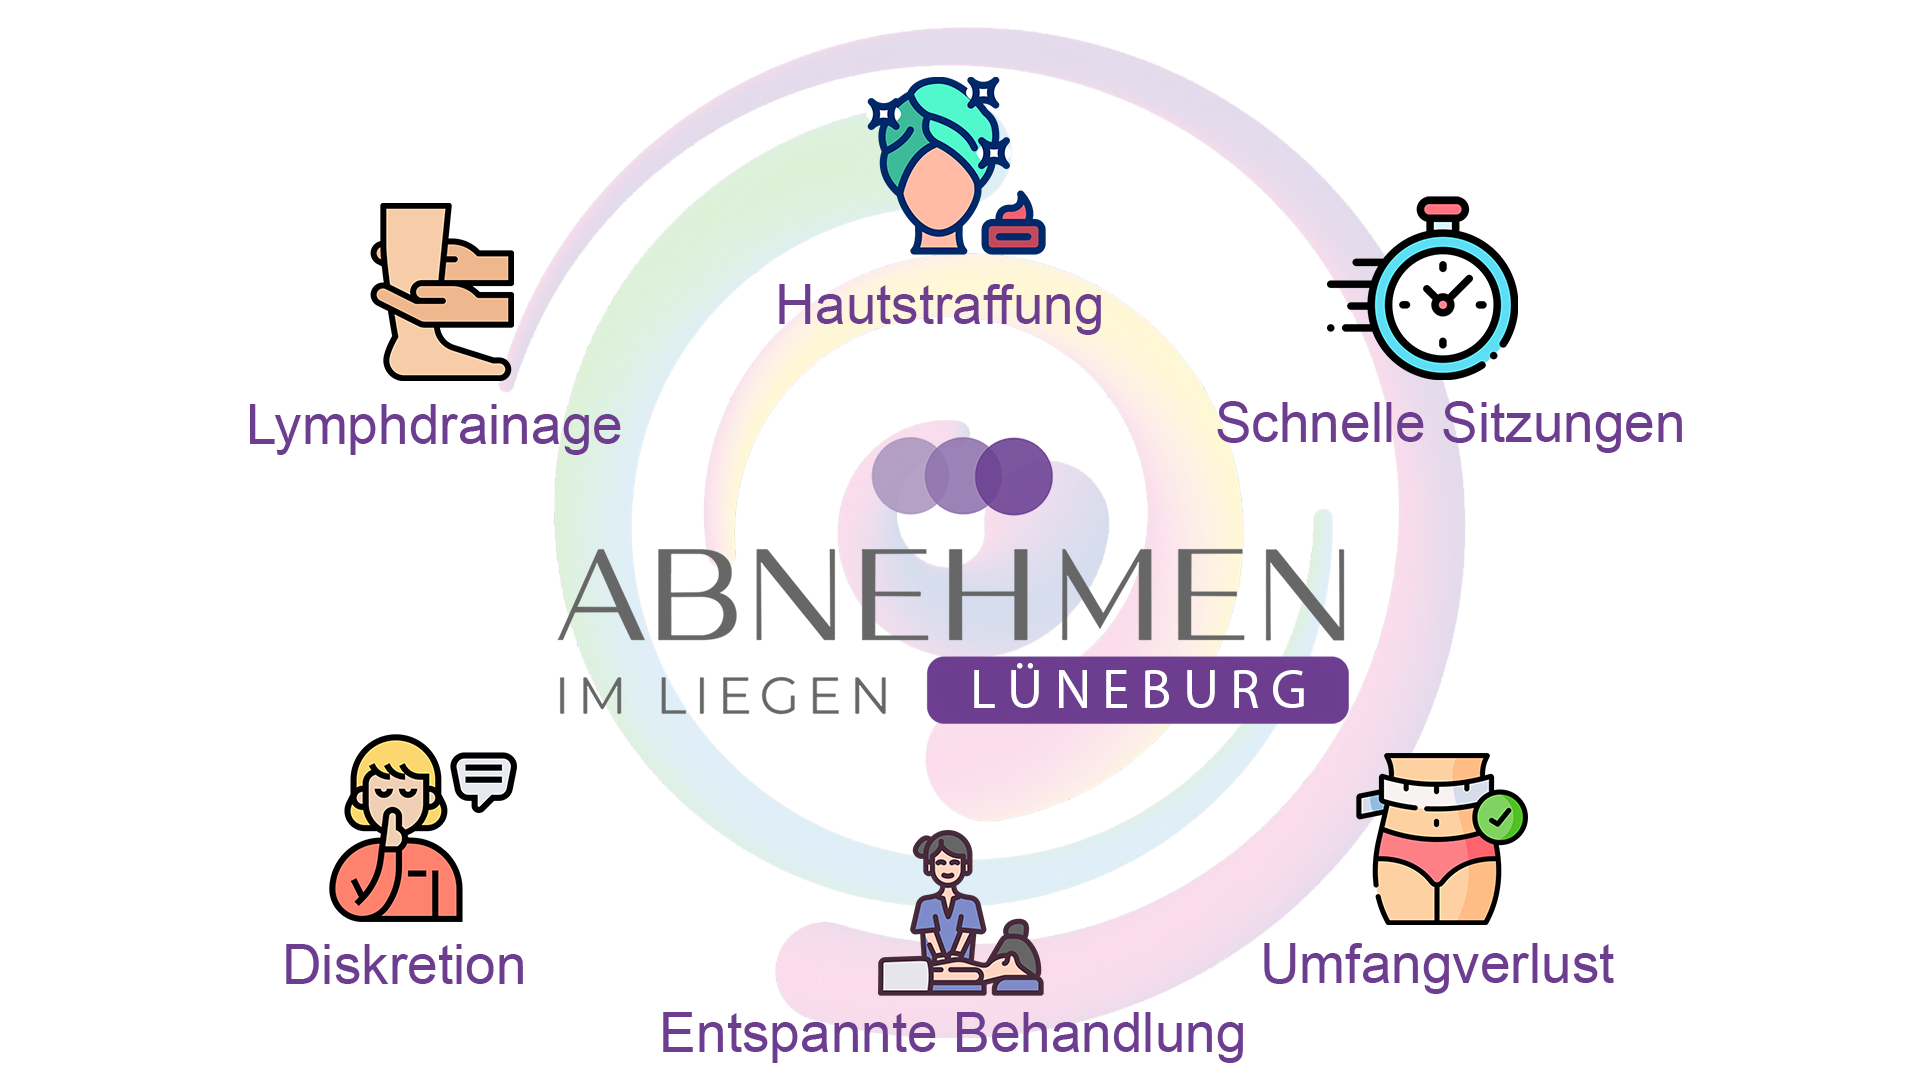 Abnehmen im Liegen Lüneburg, abnehmen, gewichtsreduktion, diät, hautstraffung, lymphdrainage, massage,